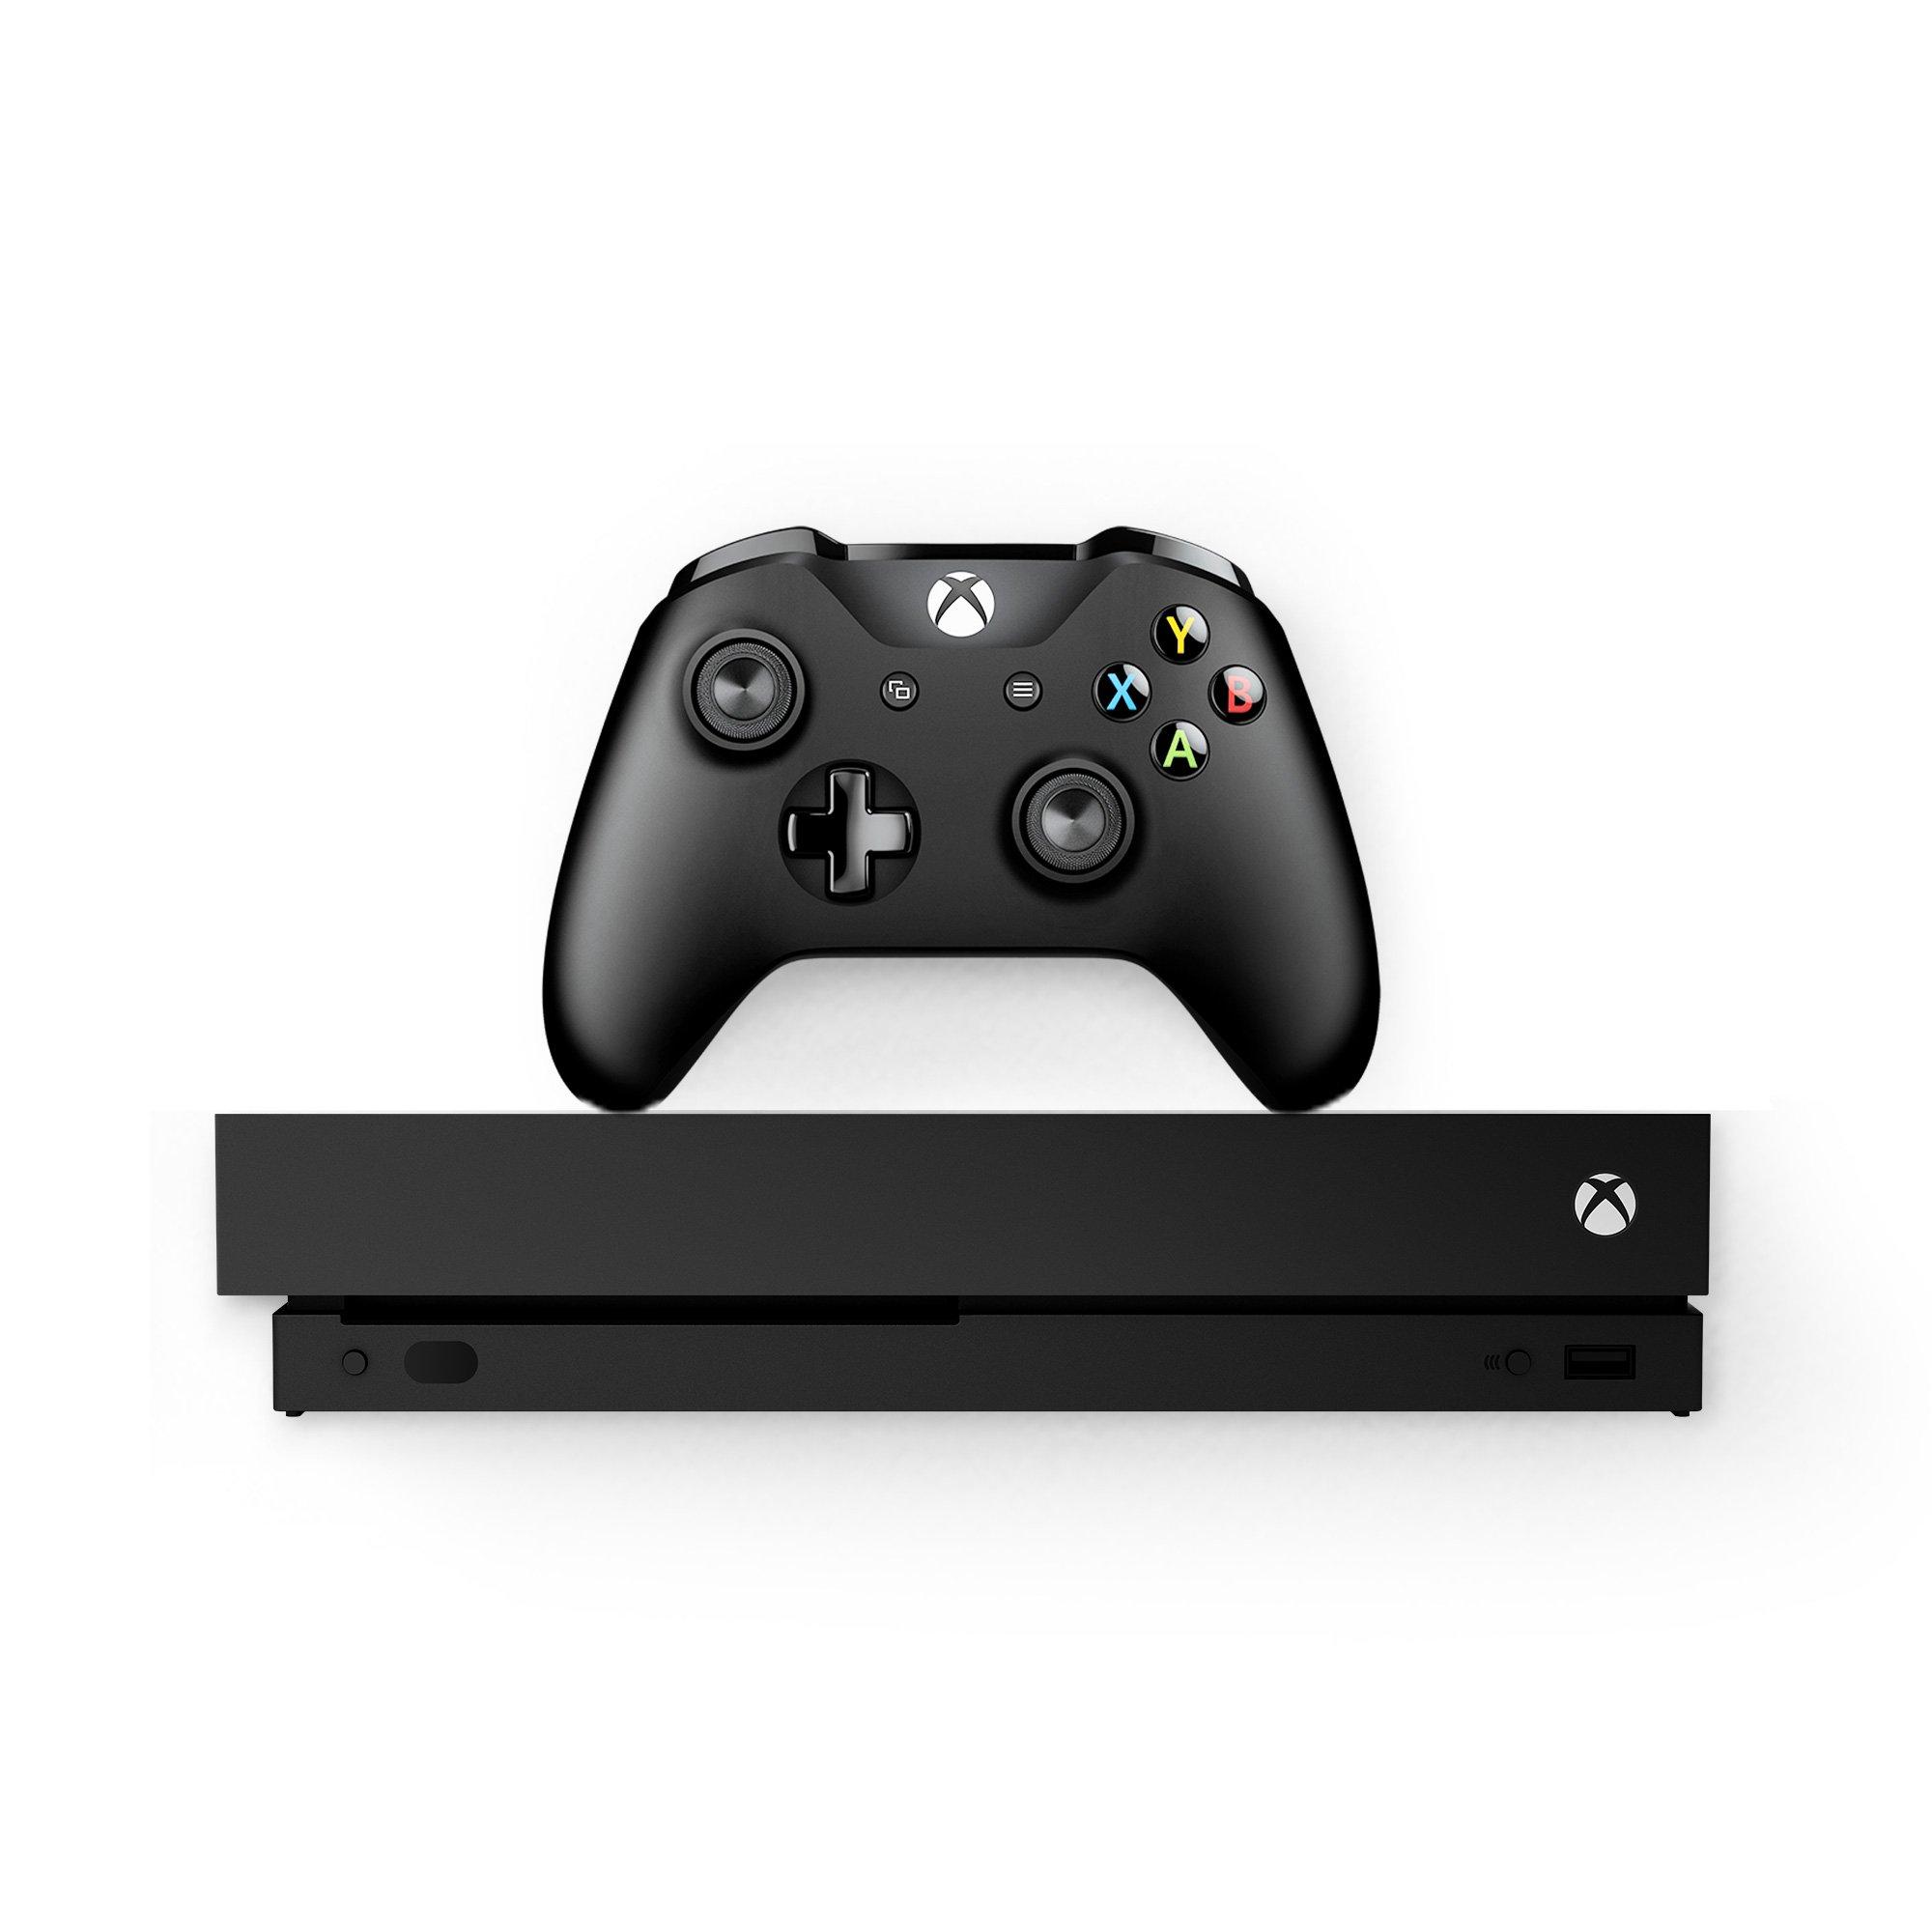 Marchito mañana Elemental Microsoft Xbox One X 1TB Console Black | GameStop